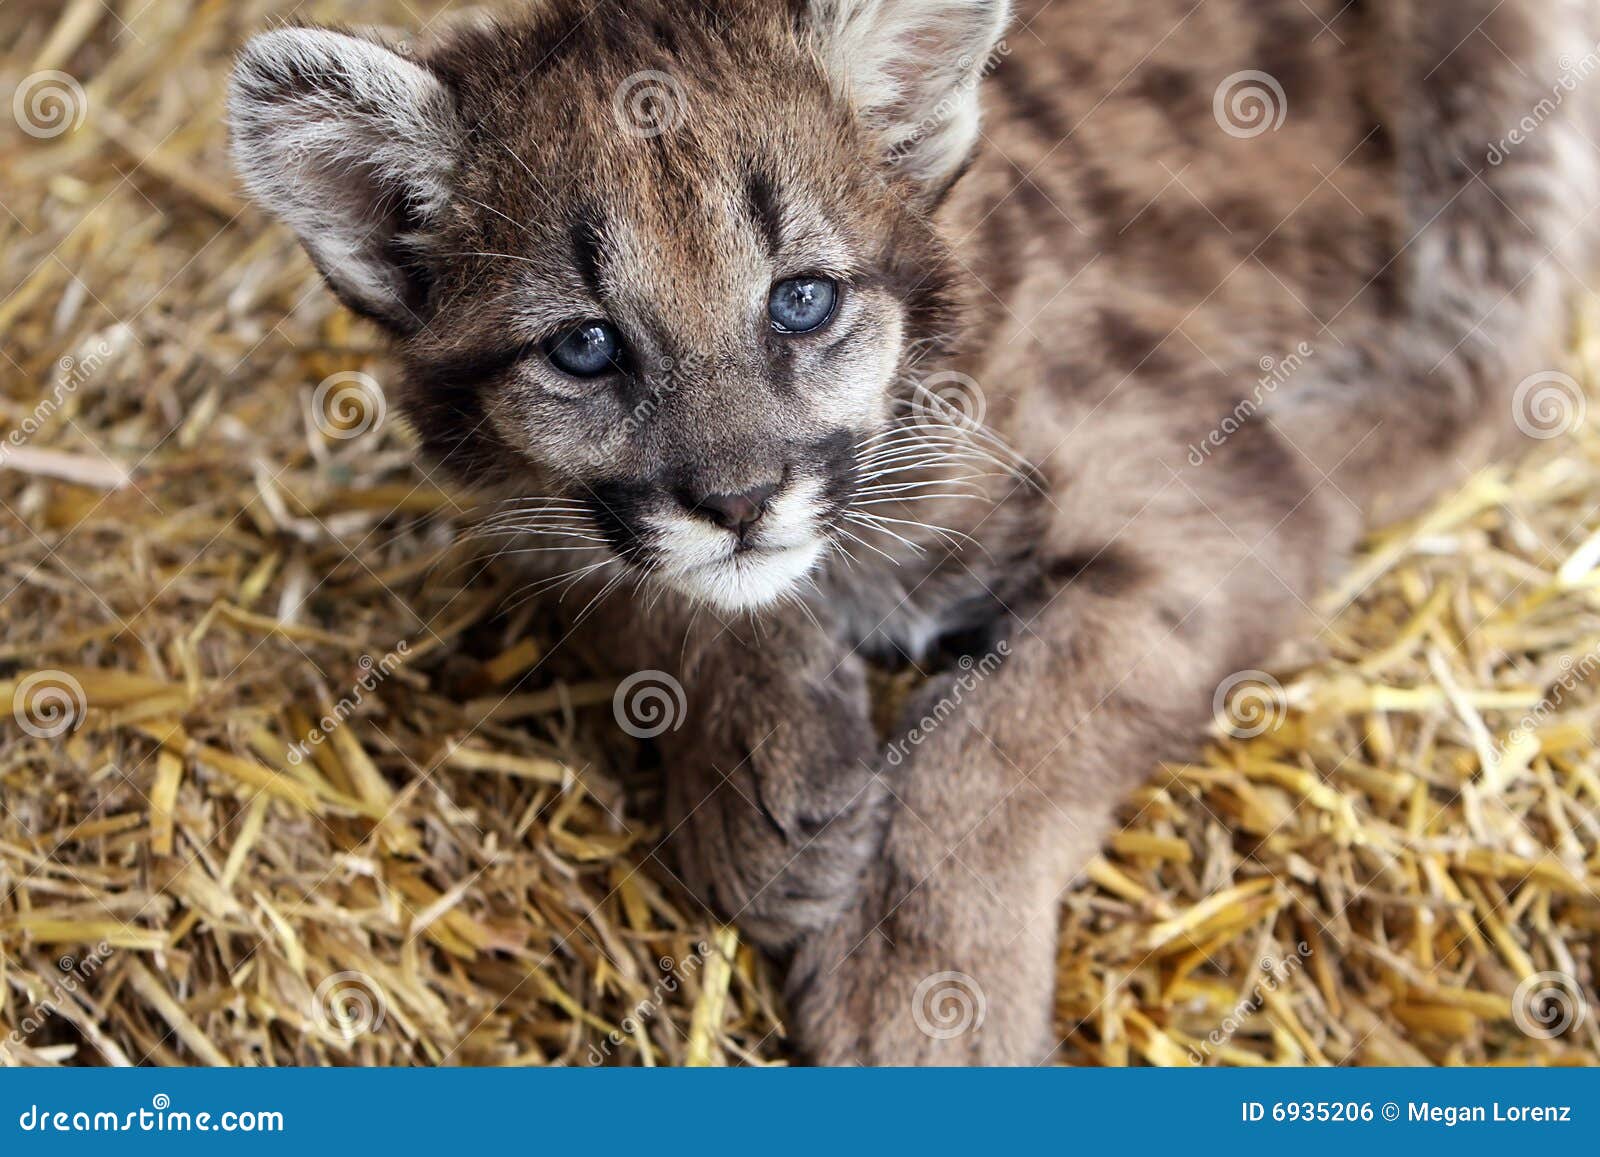 Puma del bebé foto de archivo. Imagen de bebé, puma - 6935206